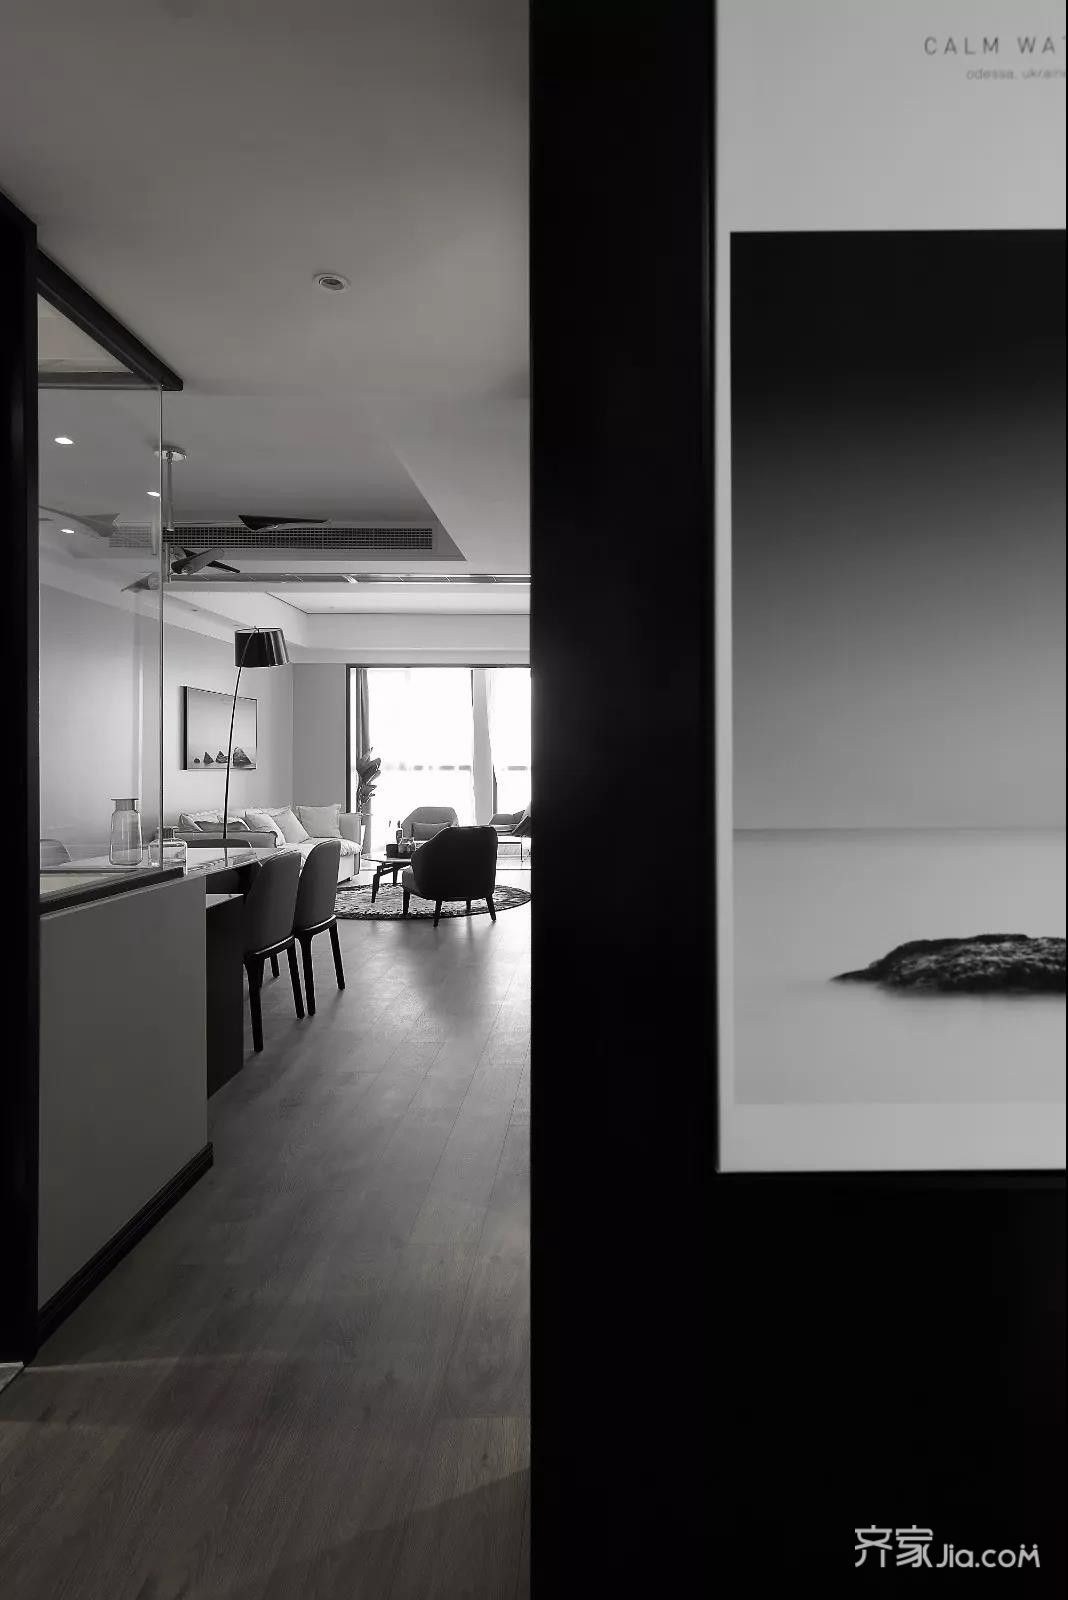 进入玄关,黑白灰色调的空间映入眼帘,带来的是一个简洁大方的时尚感.